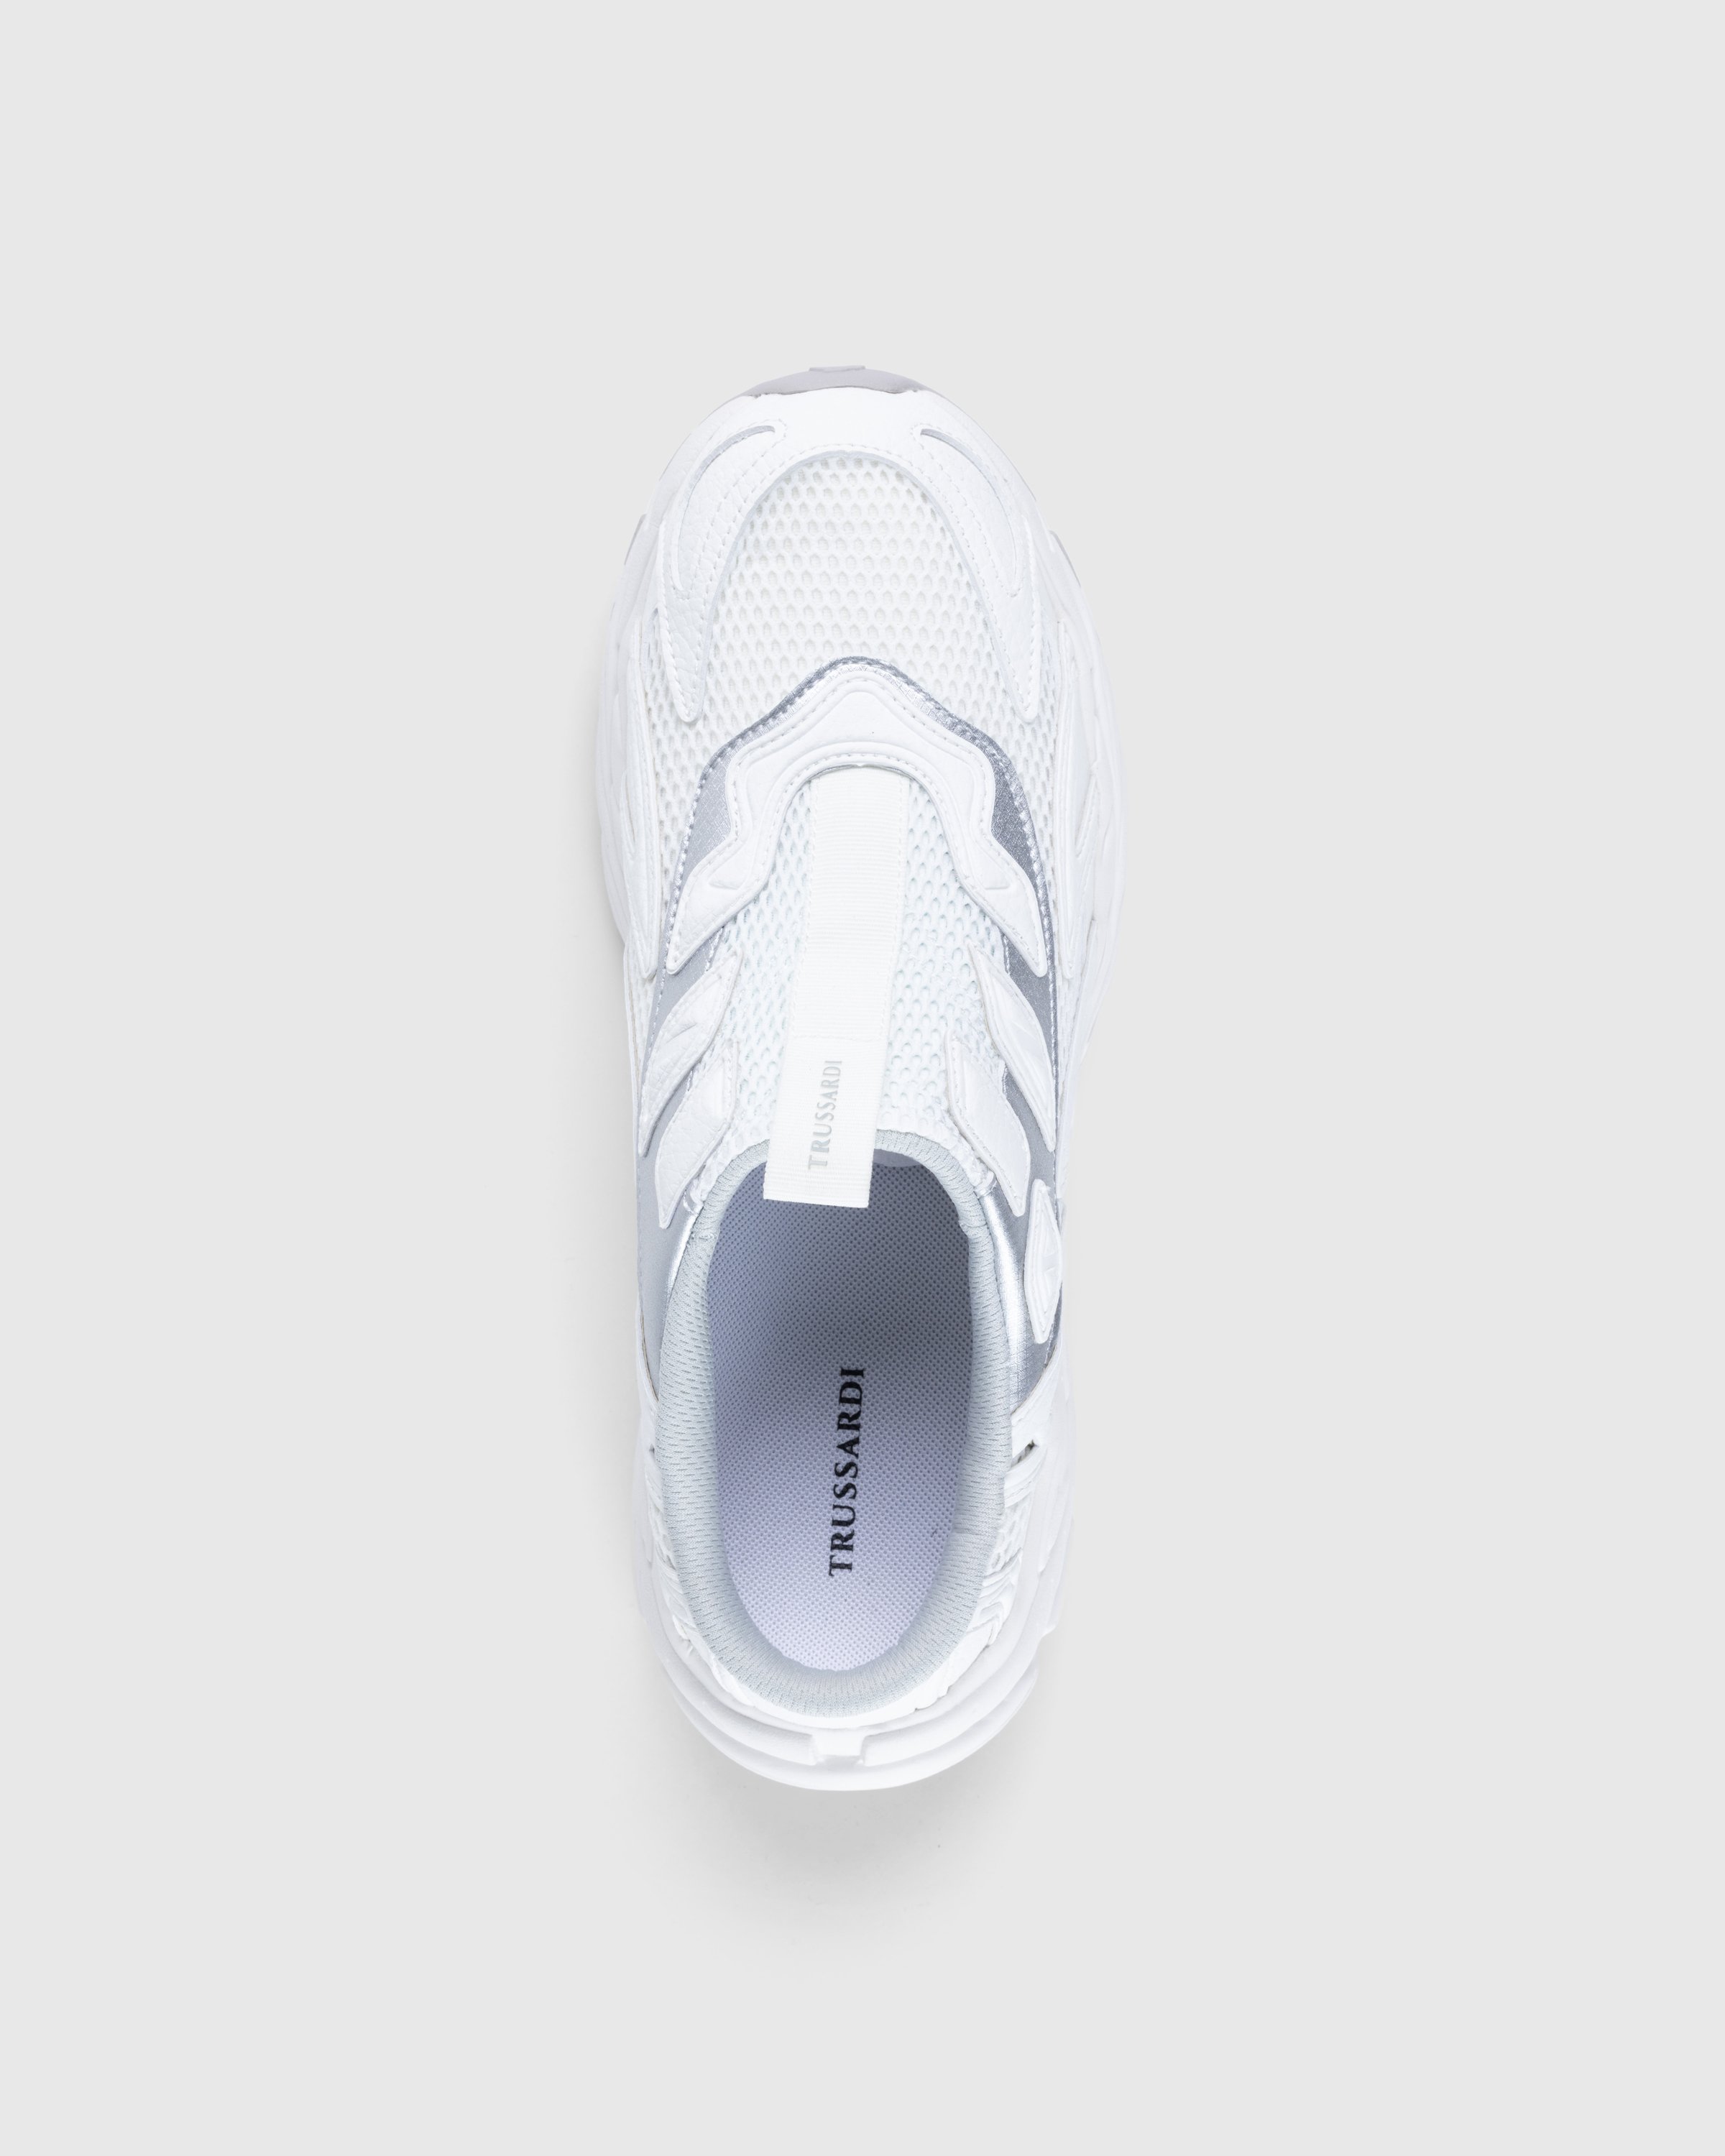 Trussardi - Retro Mule Sneaker - Footwear - White - Image 4